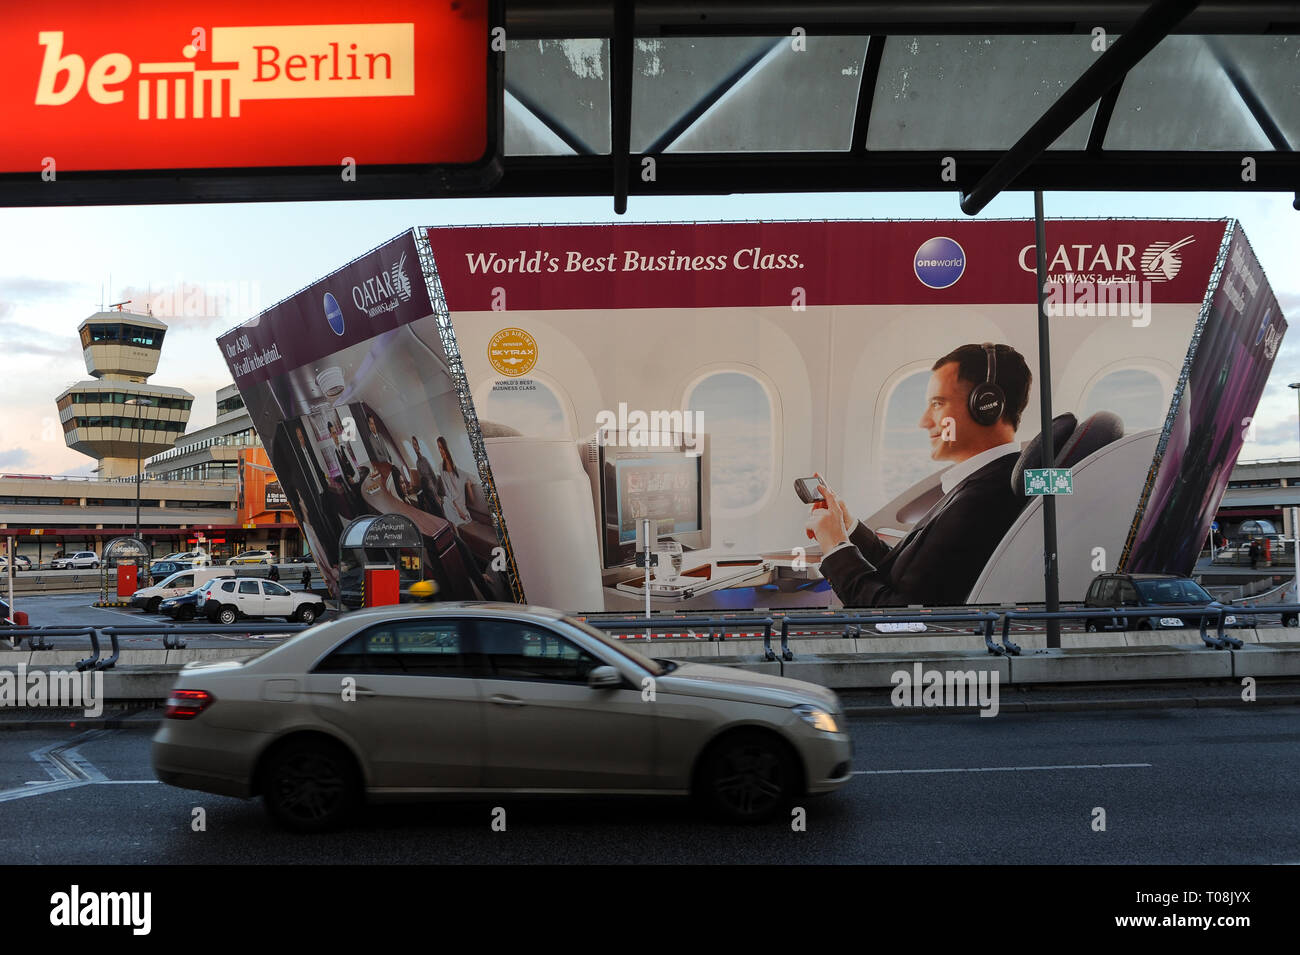 30.03.2015, Berlin, Berlin, Germania - Pubblicità per la business class della Qatar Airways presso l'aeroporto di Berlino Tegel. 0SL150330D002CAROEX.JPG [modalità Foto Stock